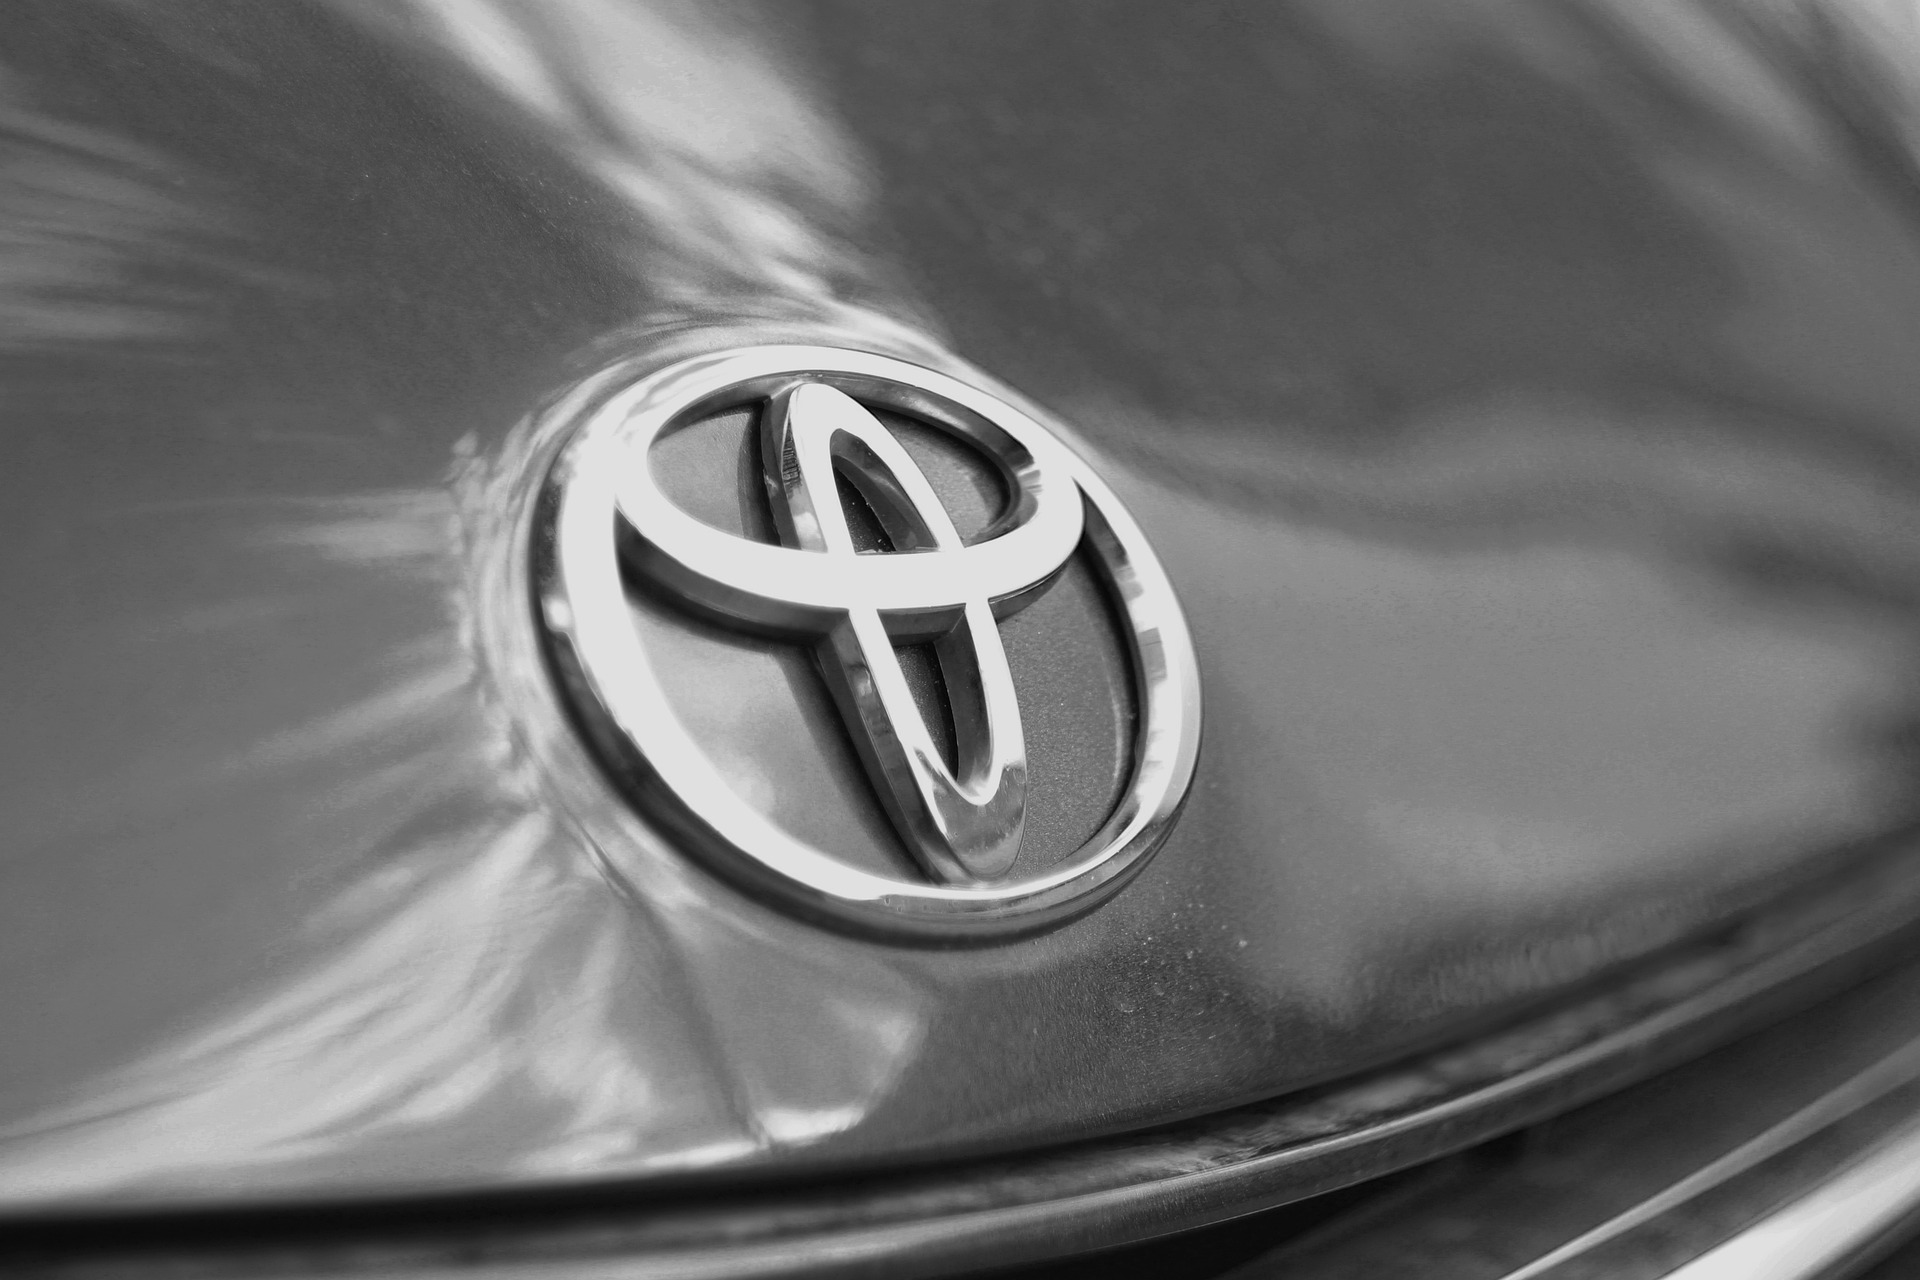 Melhor marca de carro do mundo - Toyota